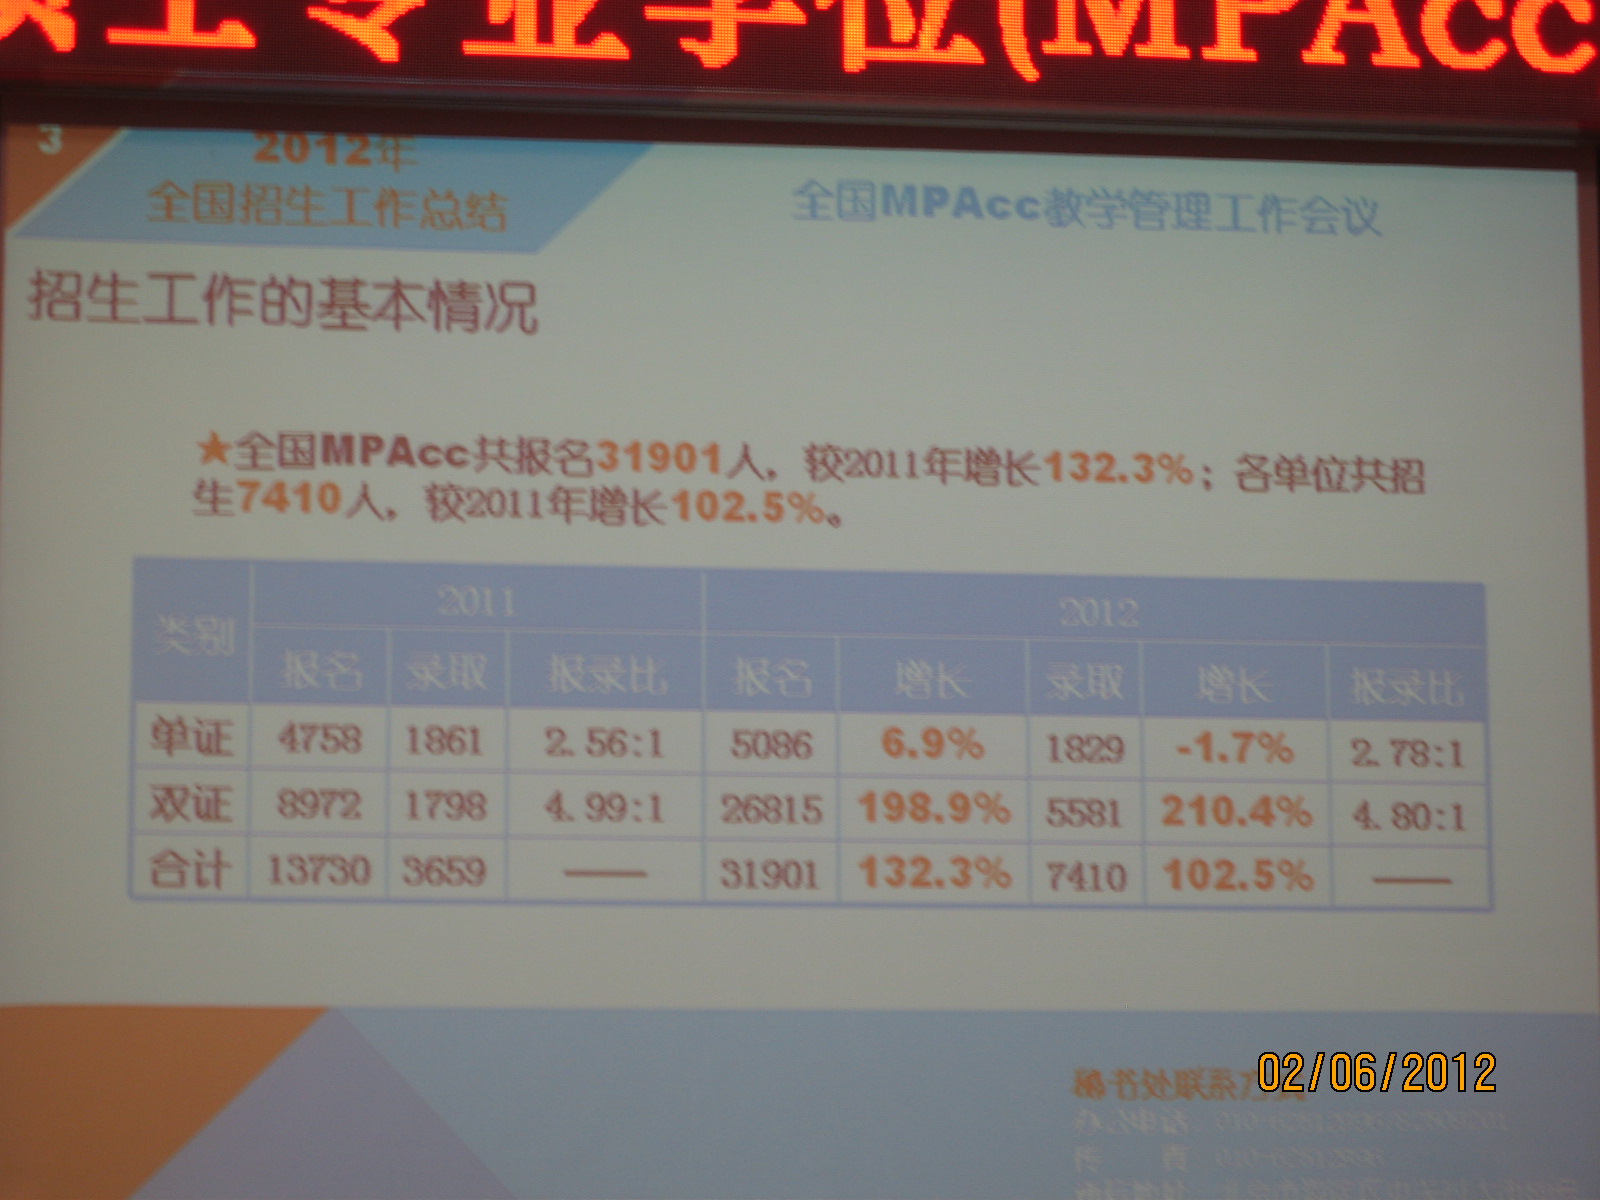 中国会计硕士网 | 中国MPAcc网 www.